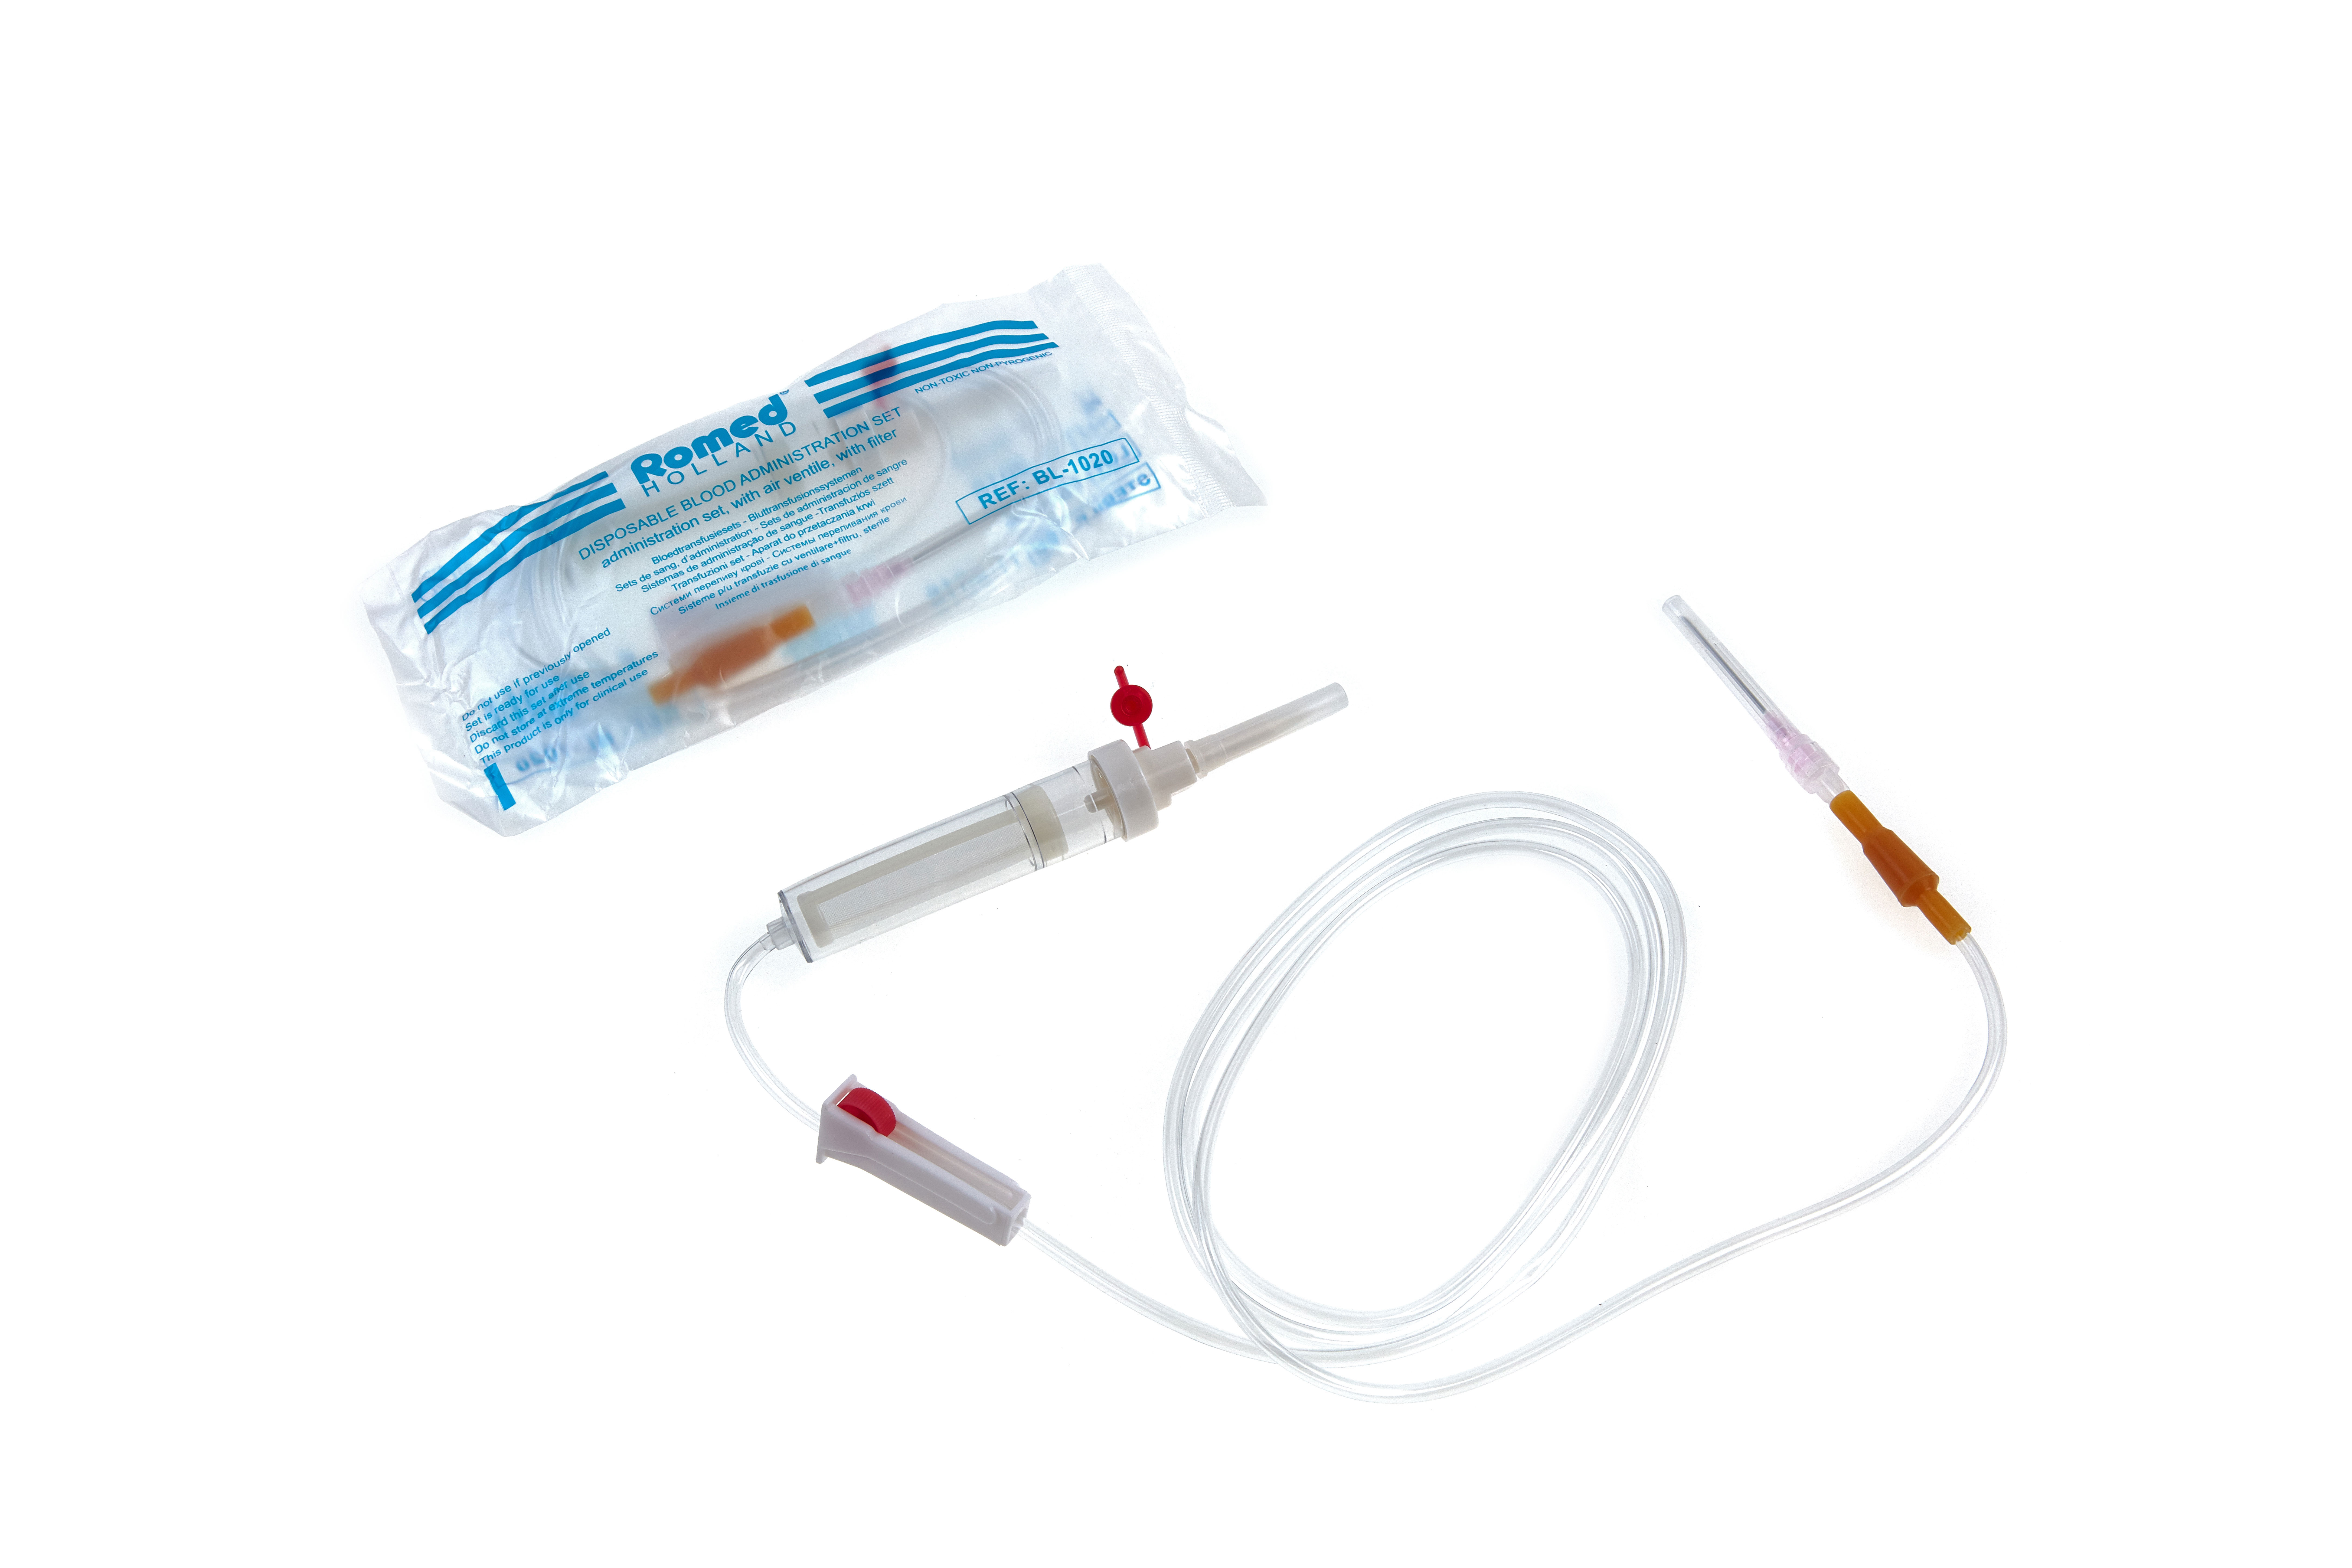 BL-1020 Romed Bluttransfusionssysteme mit Ventil und Filter, steril, pro Stück in einem Beutel, 250 Stück im Karton.